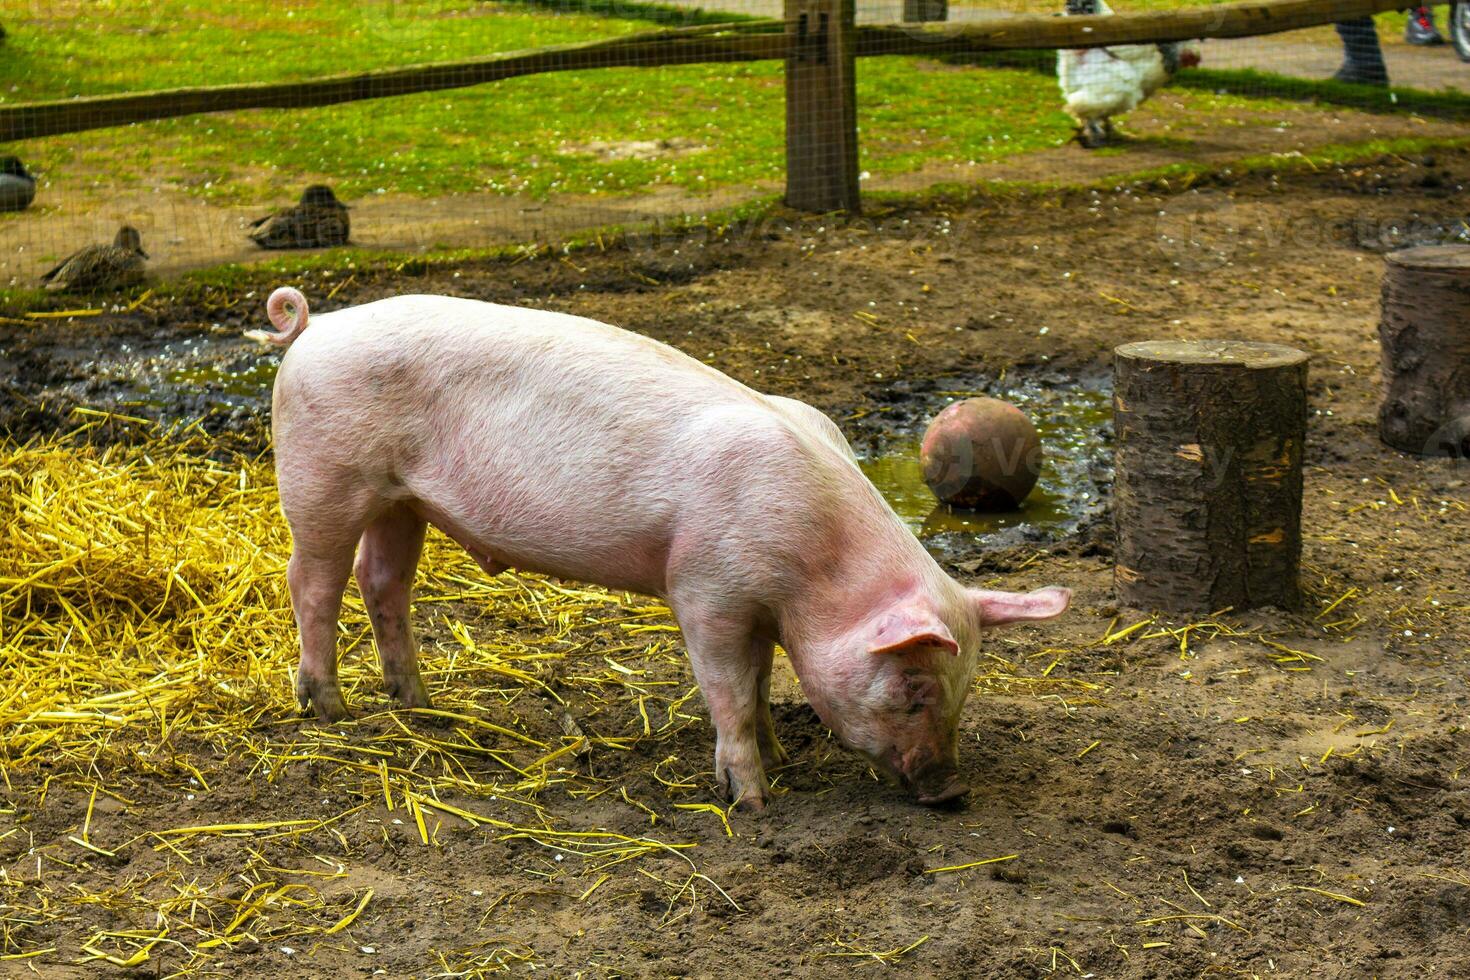 huiselijk varkens in de bijlage dierentuin keukenhof park lisse nederland. foto